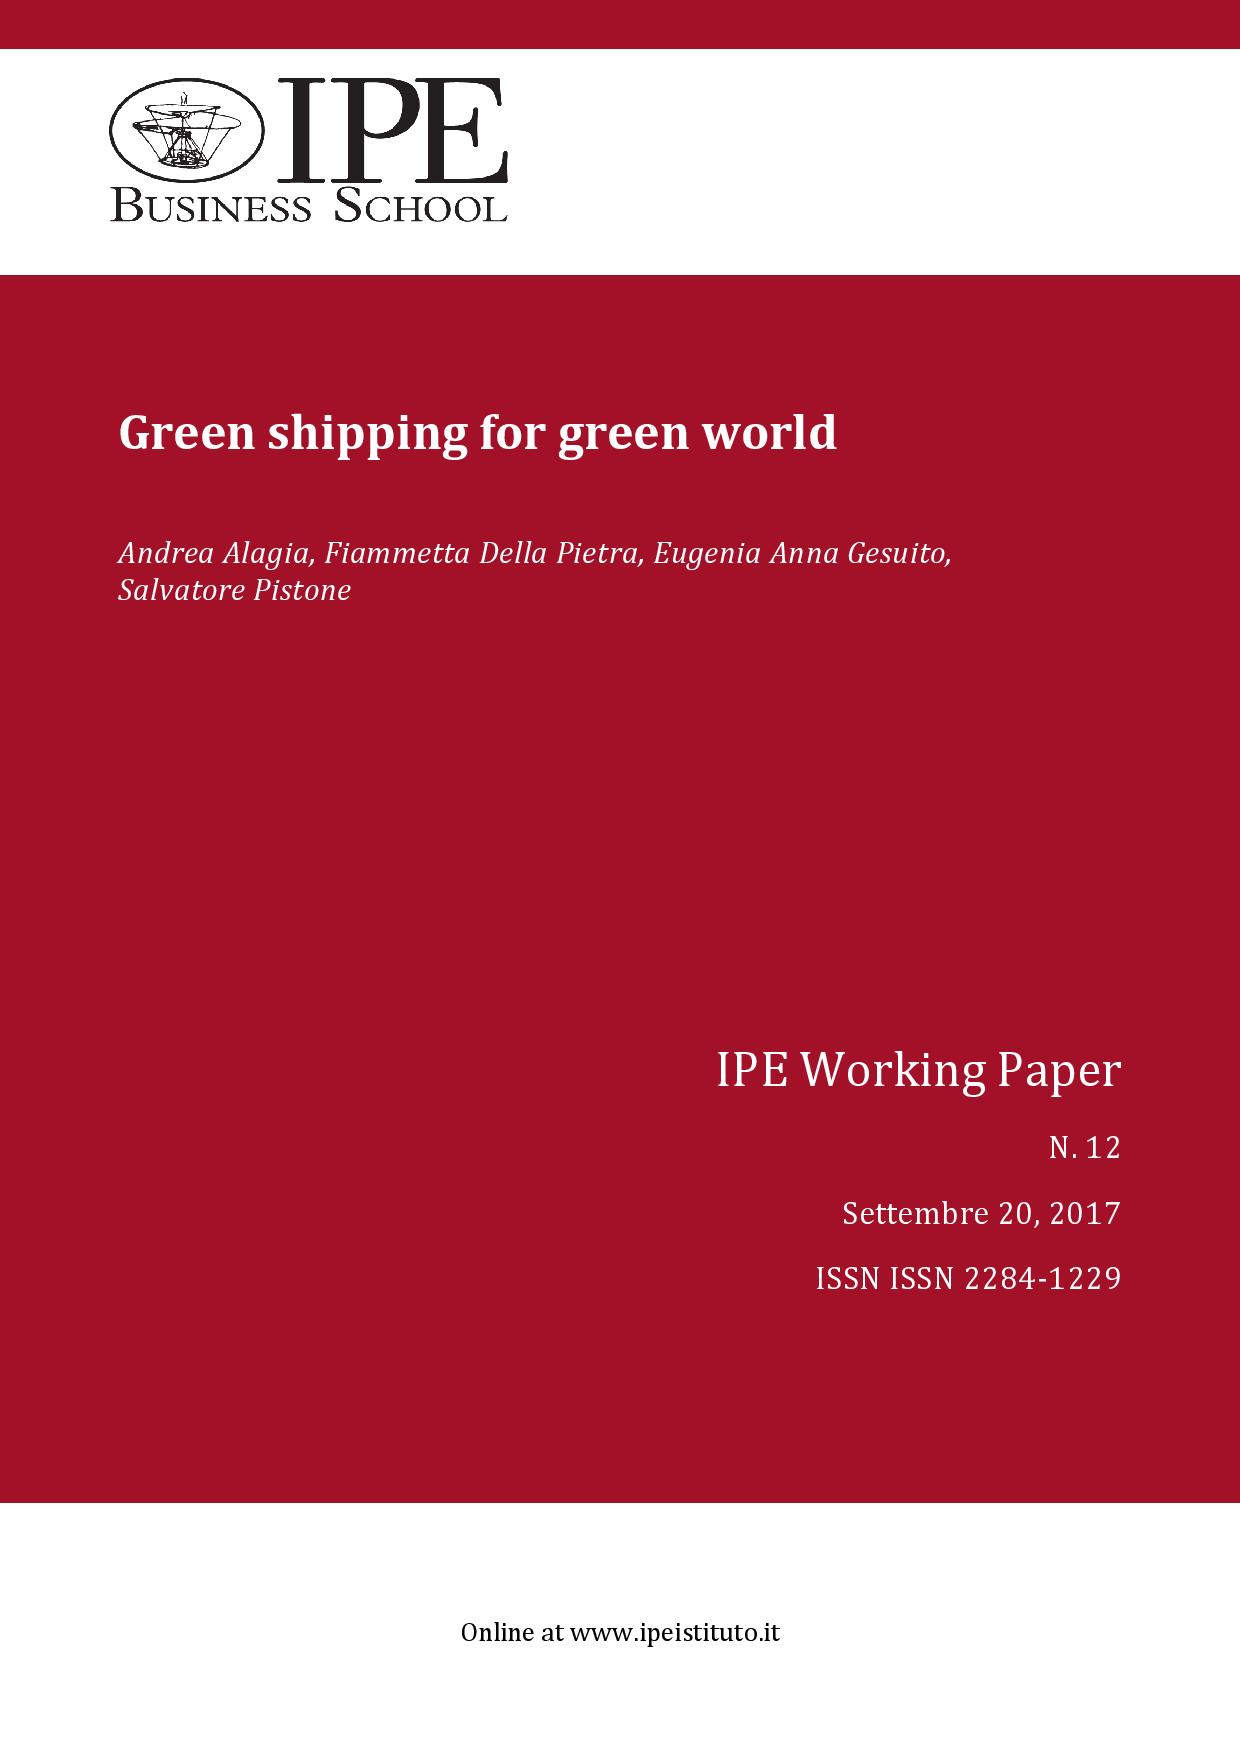 IPE Working Paper N.12/2017